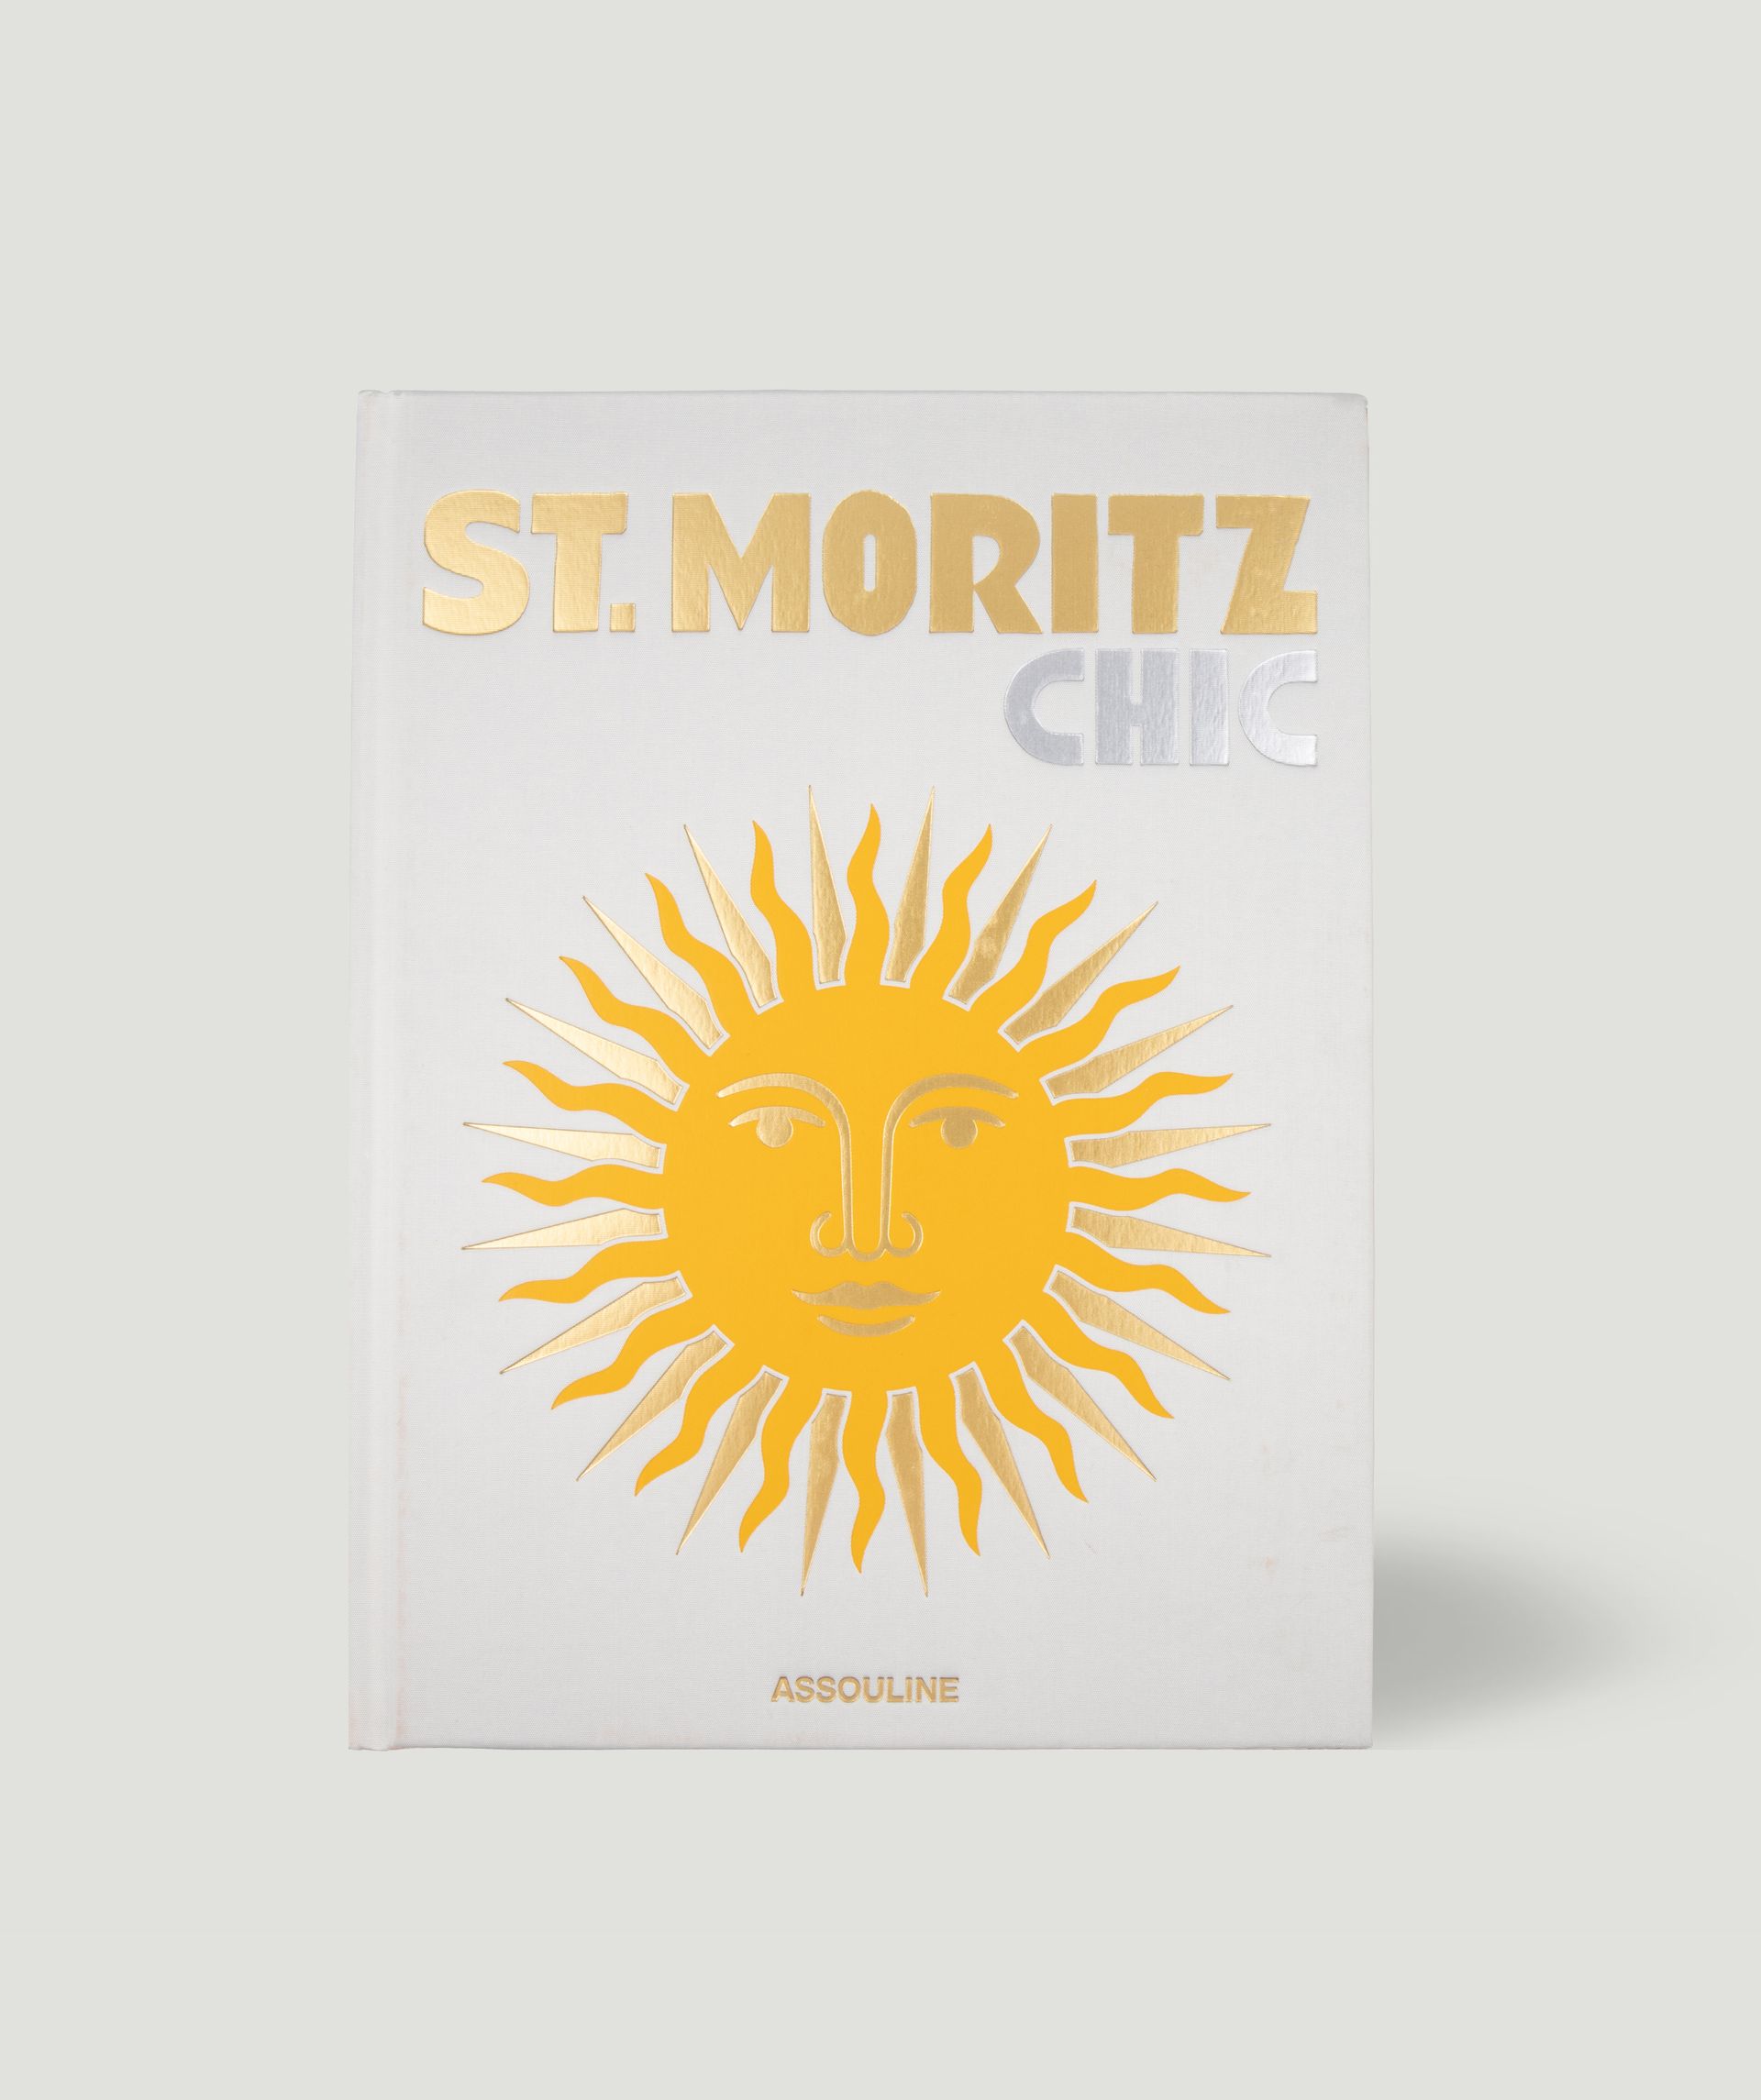 St. Moritz Chic Tischbuch  